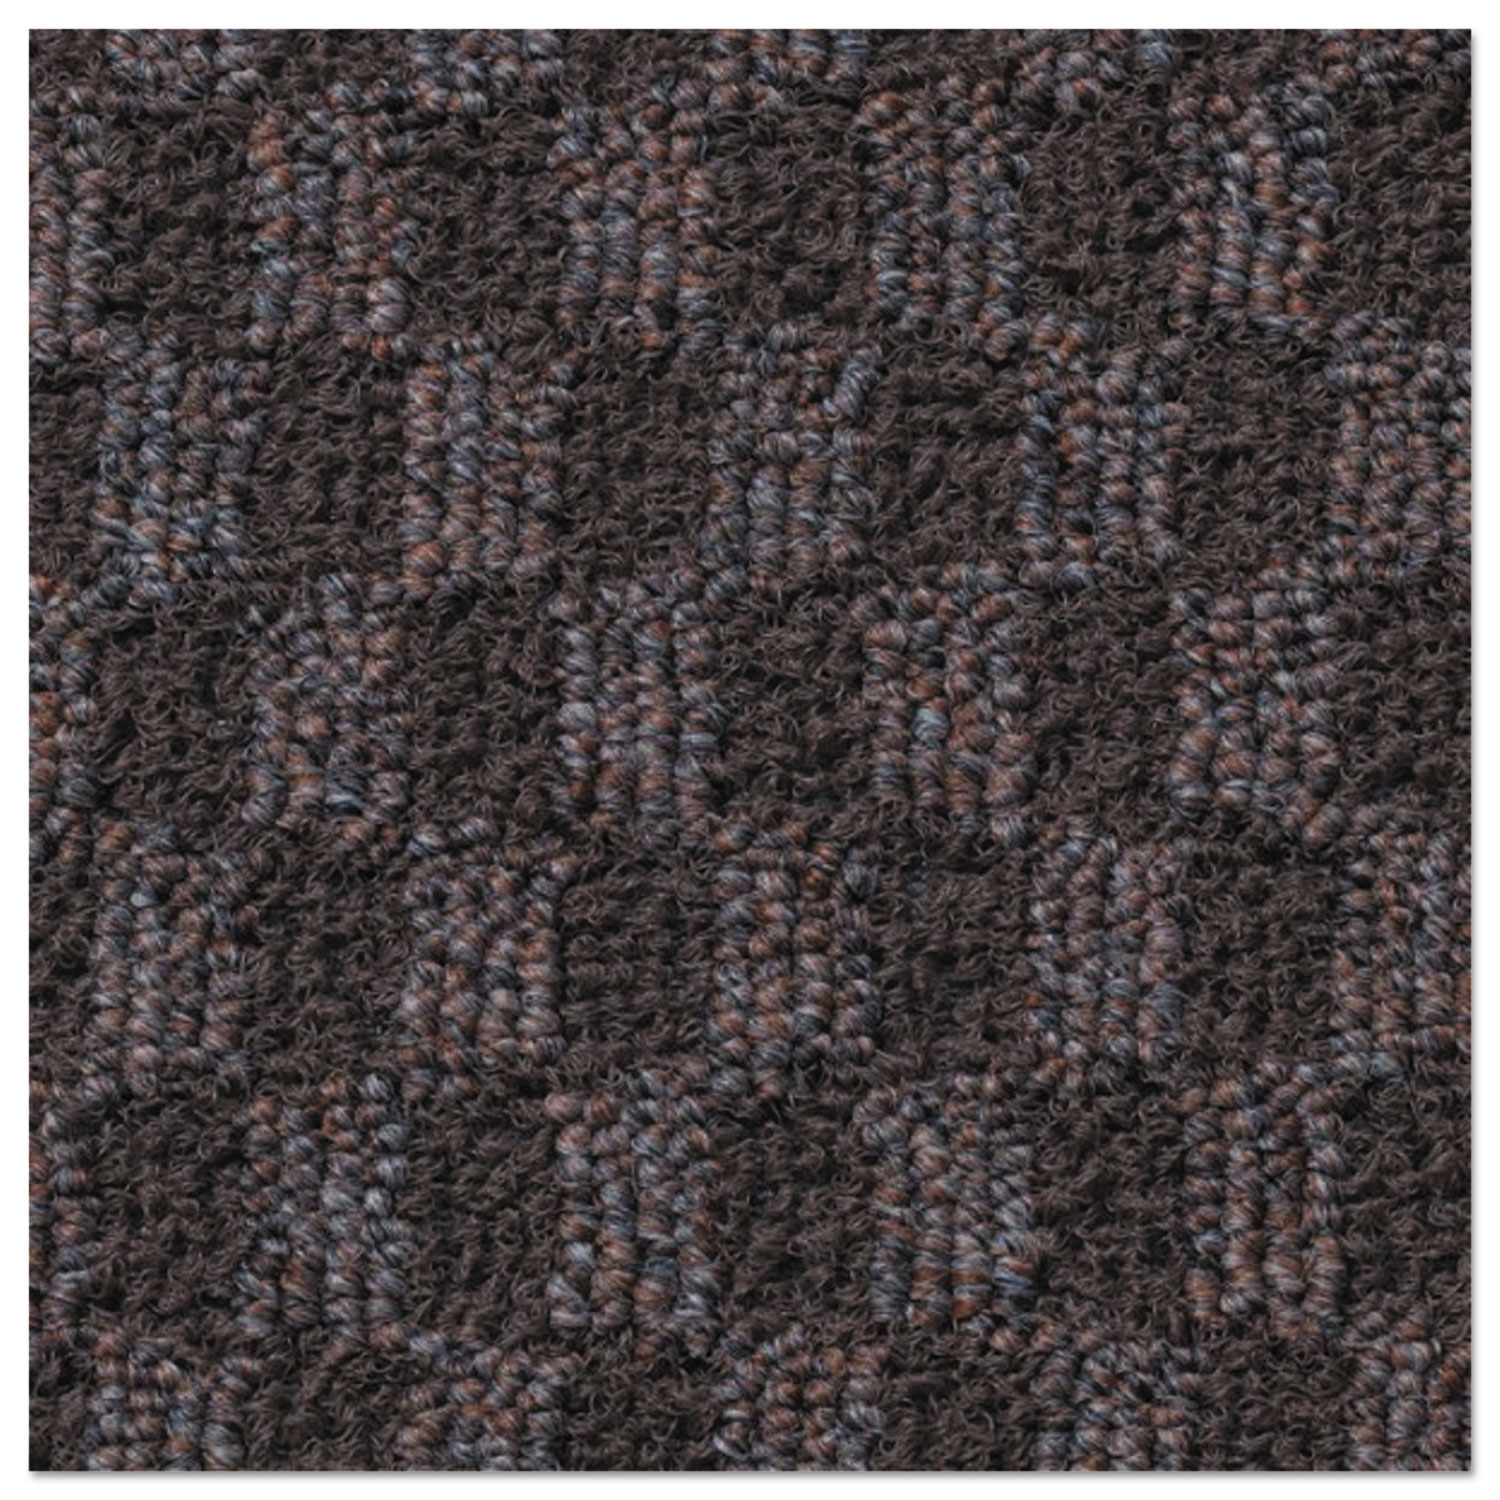 Nomad 6500 Carpet Matting, Polypropylene, 48 x 120, Brown